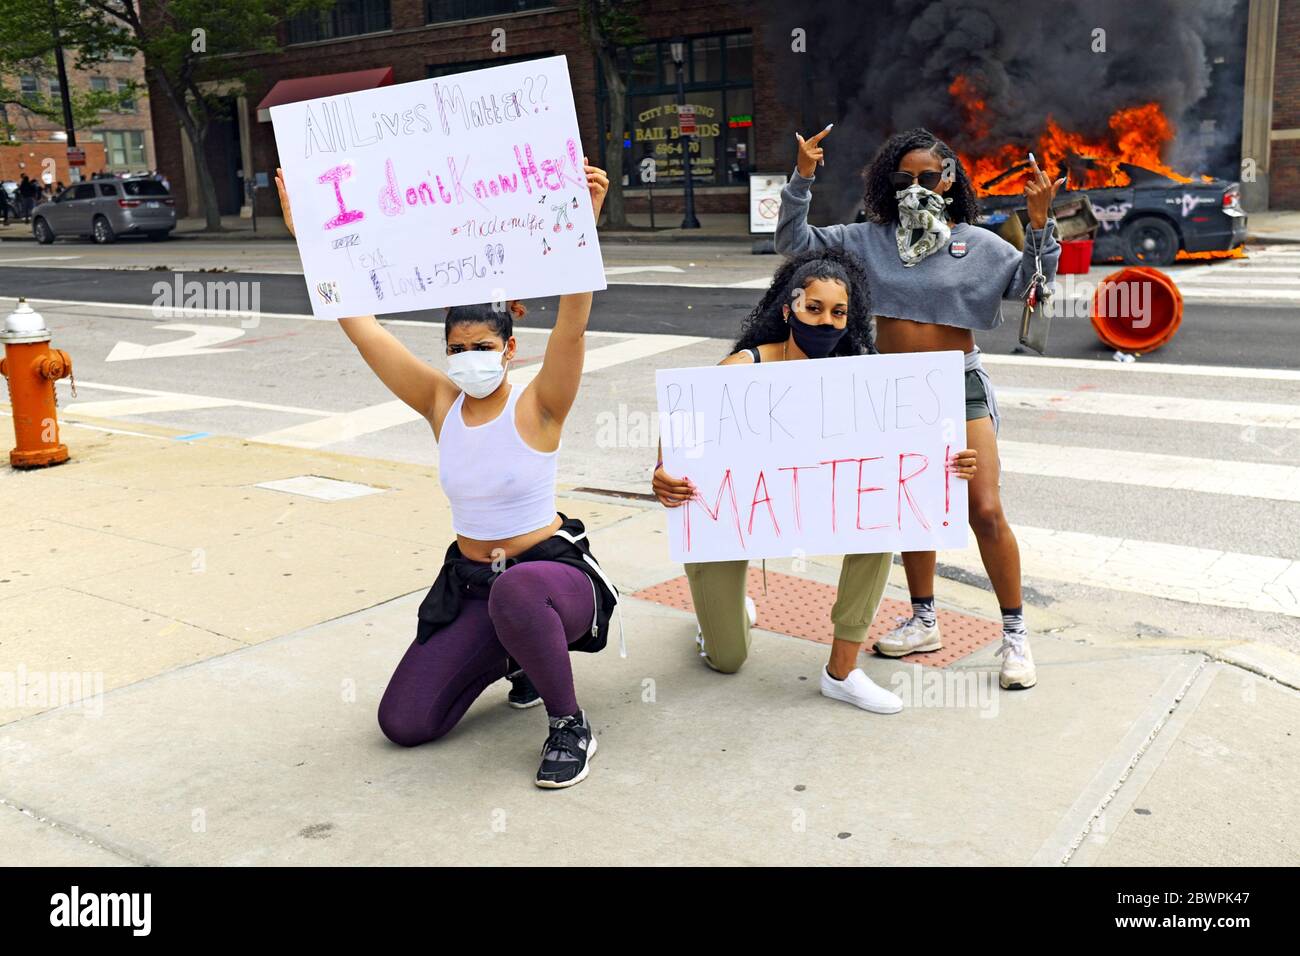 Drei Frauen posieren mit Schildern vor zwei brennenden Polizeiautos in der Innenstadt von Cleveland, Ohio, USA während eines Protestes zu Black Lives Matter am 30. Mai 2020. Die drei waren unter Tausenden, die in Cleveland auf die Straßen gingen, um gegen die Polizeipolitik, die Praktiken und die Ermordung schwarzer Menschen zu protestieren. Stockfoto